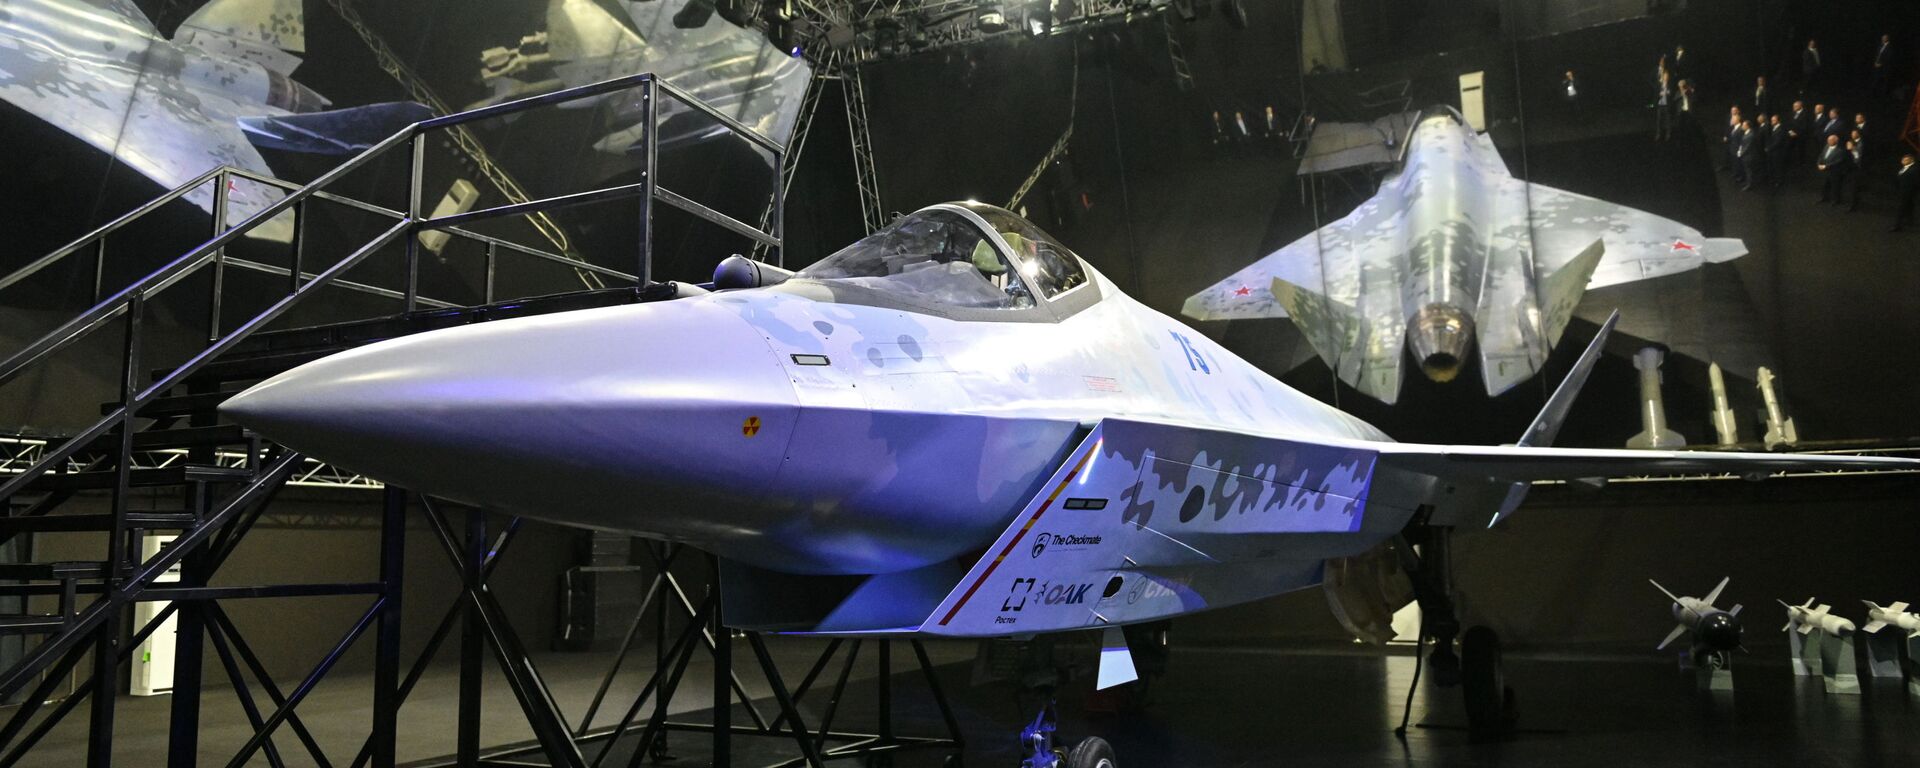 مقاتلة سوخوي تشيك ميت (مات الشاه) في معرض الطيران والفضاء الدولي ماكس 2021 في جوكوفسكي، ضواحي موسكو، روسيا 20 يوليو 2021 - سبوتنيك عربي, 1920, 15.11.2021